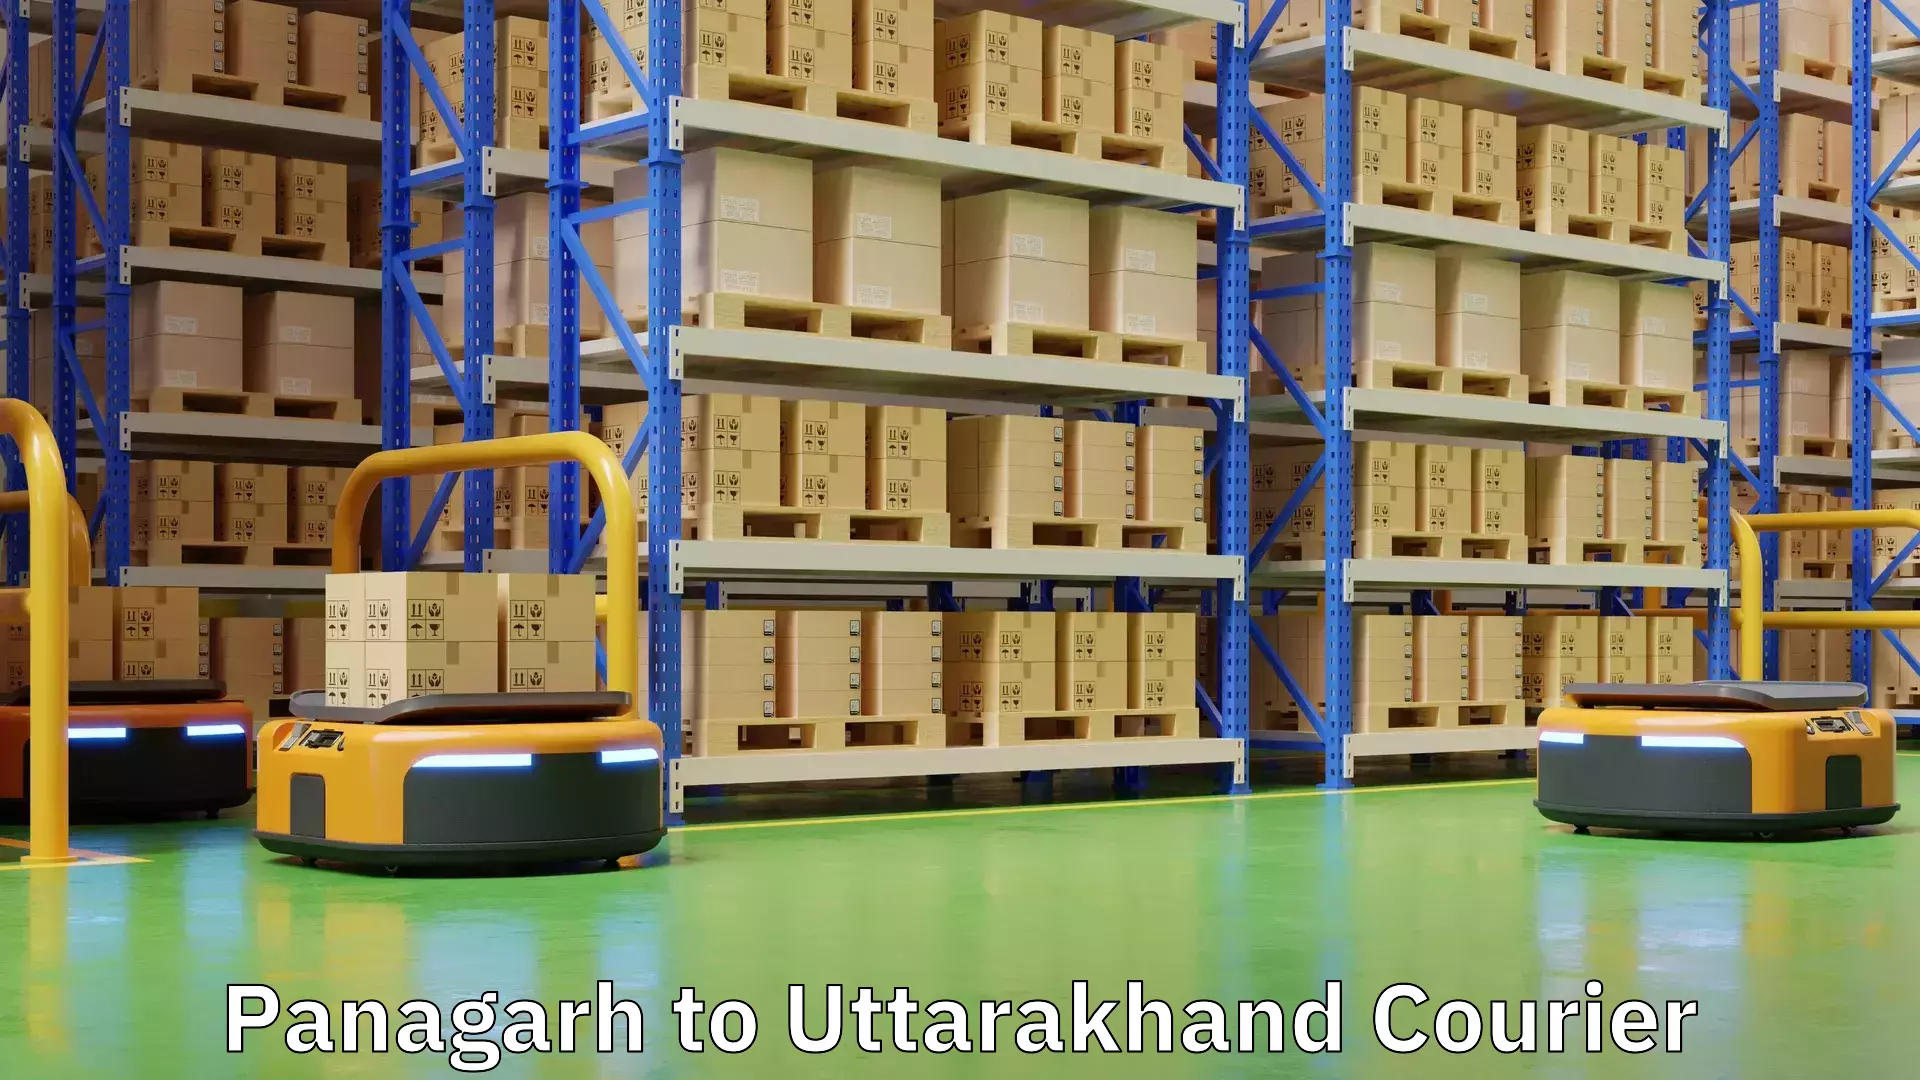 Courier service comparison Panagarh to Uttarakhand